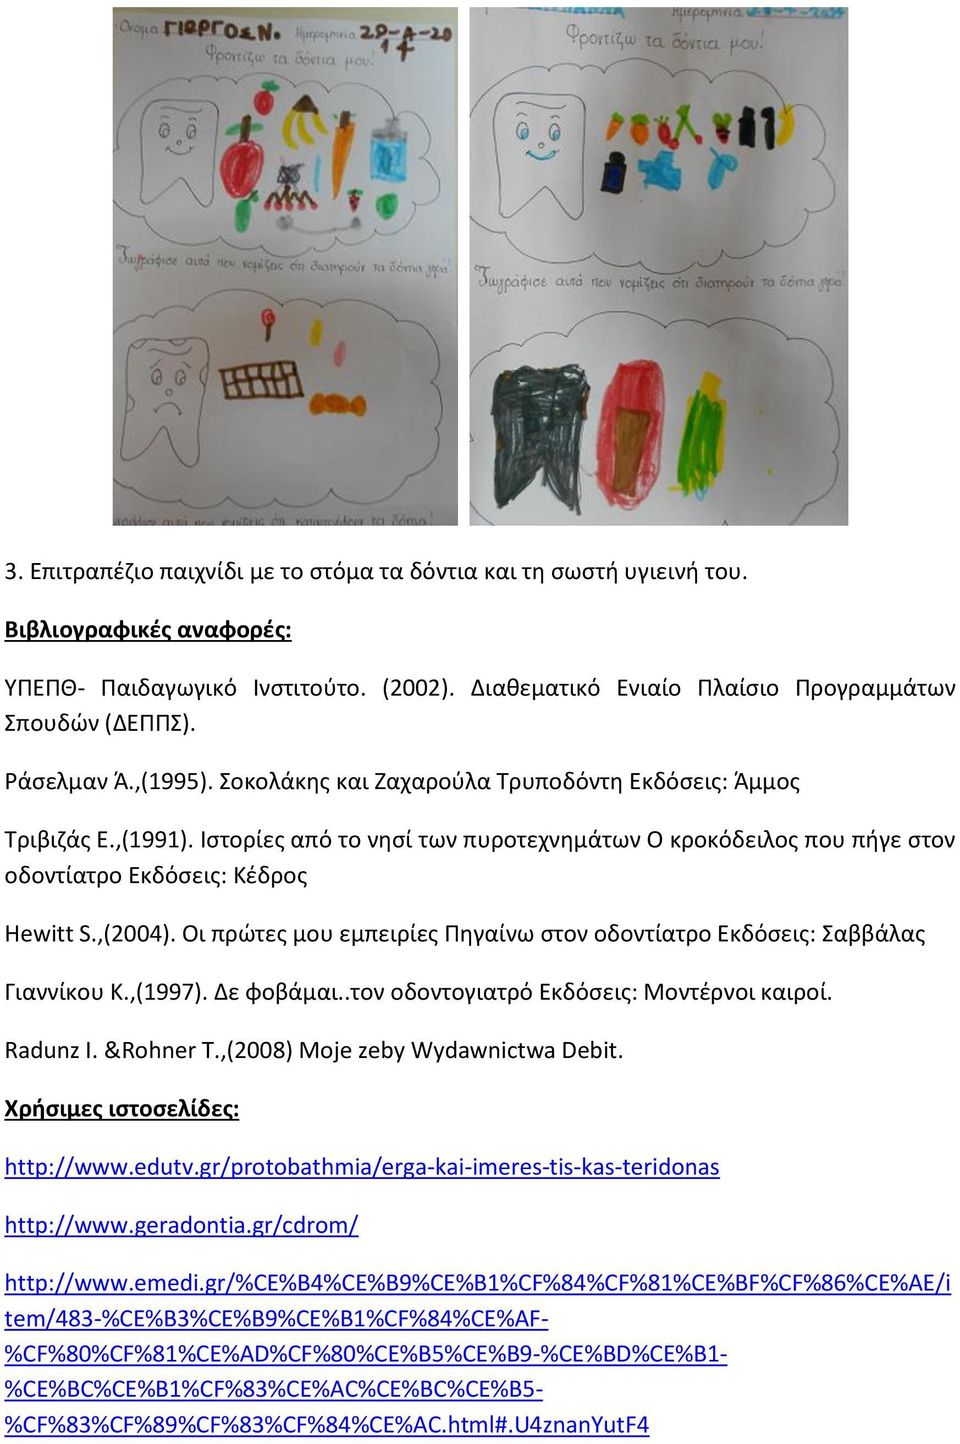 ,(2004). Οι πρώτες μου εμπειρίες Πηγαίνω στον οδοντίατρο Εκδόσεις: Σαββάλας Γιαννίκου Κ.,(1997). Δε φοβάμαι..τον οδοντογιατρό Εκδόσεις: Μοντέρνοι καιροί. Radunz I. &Rohner T.